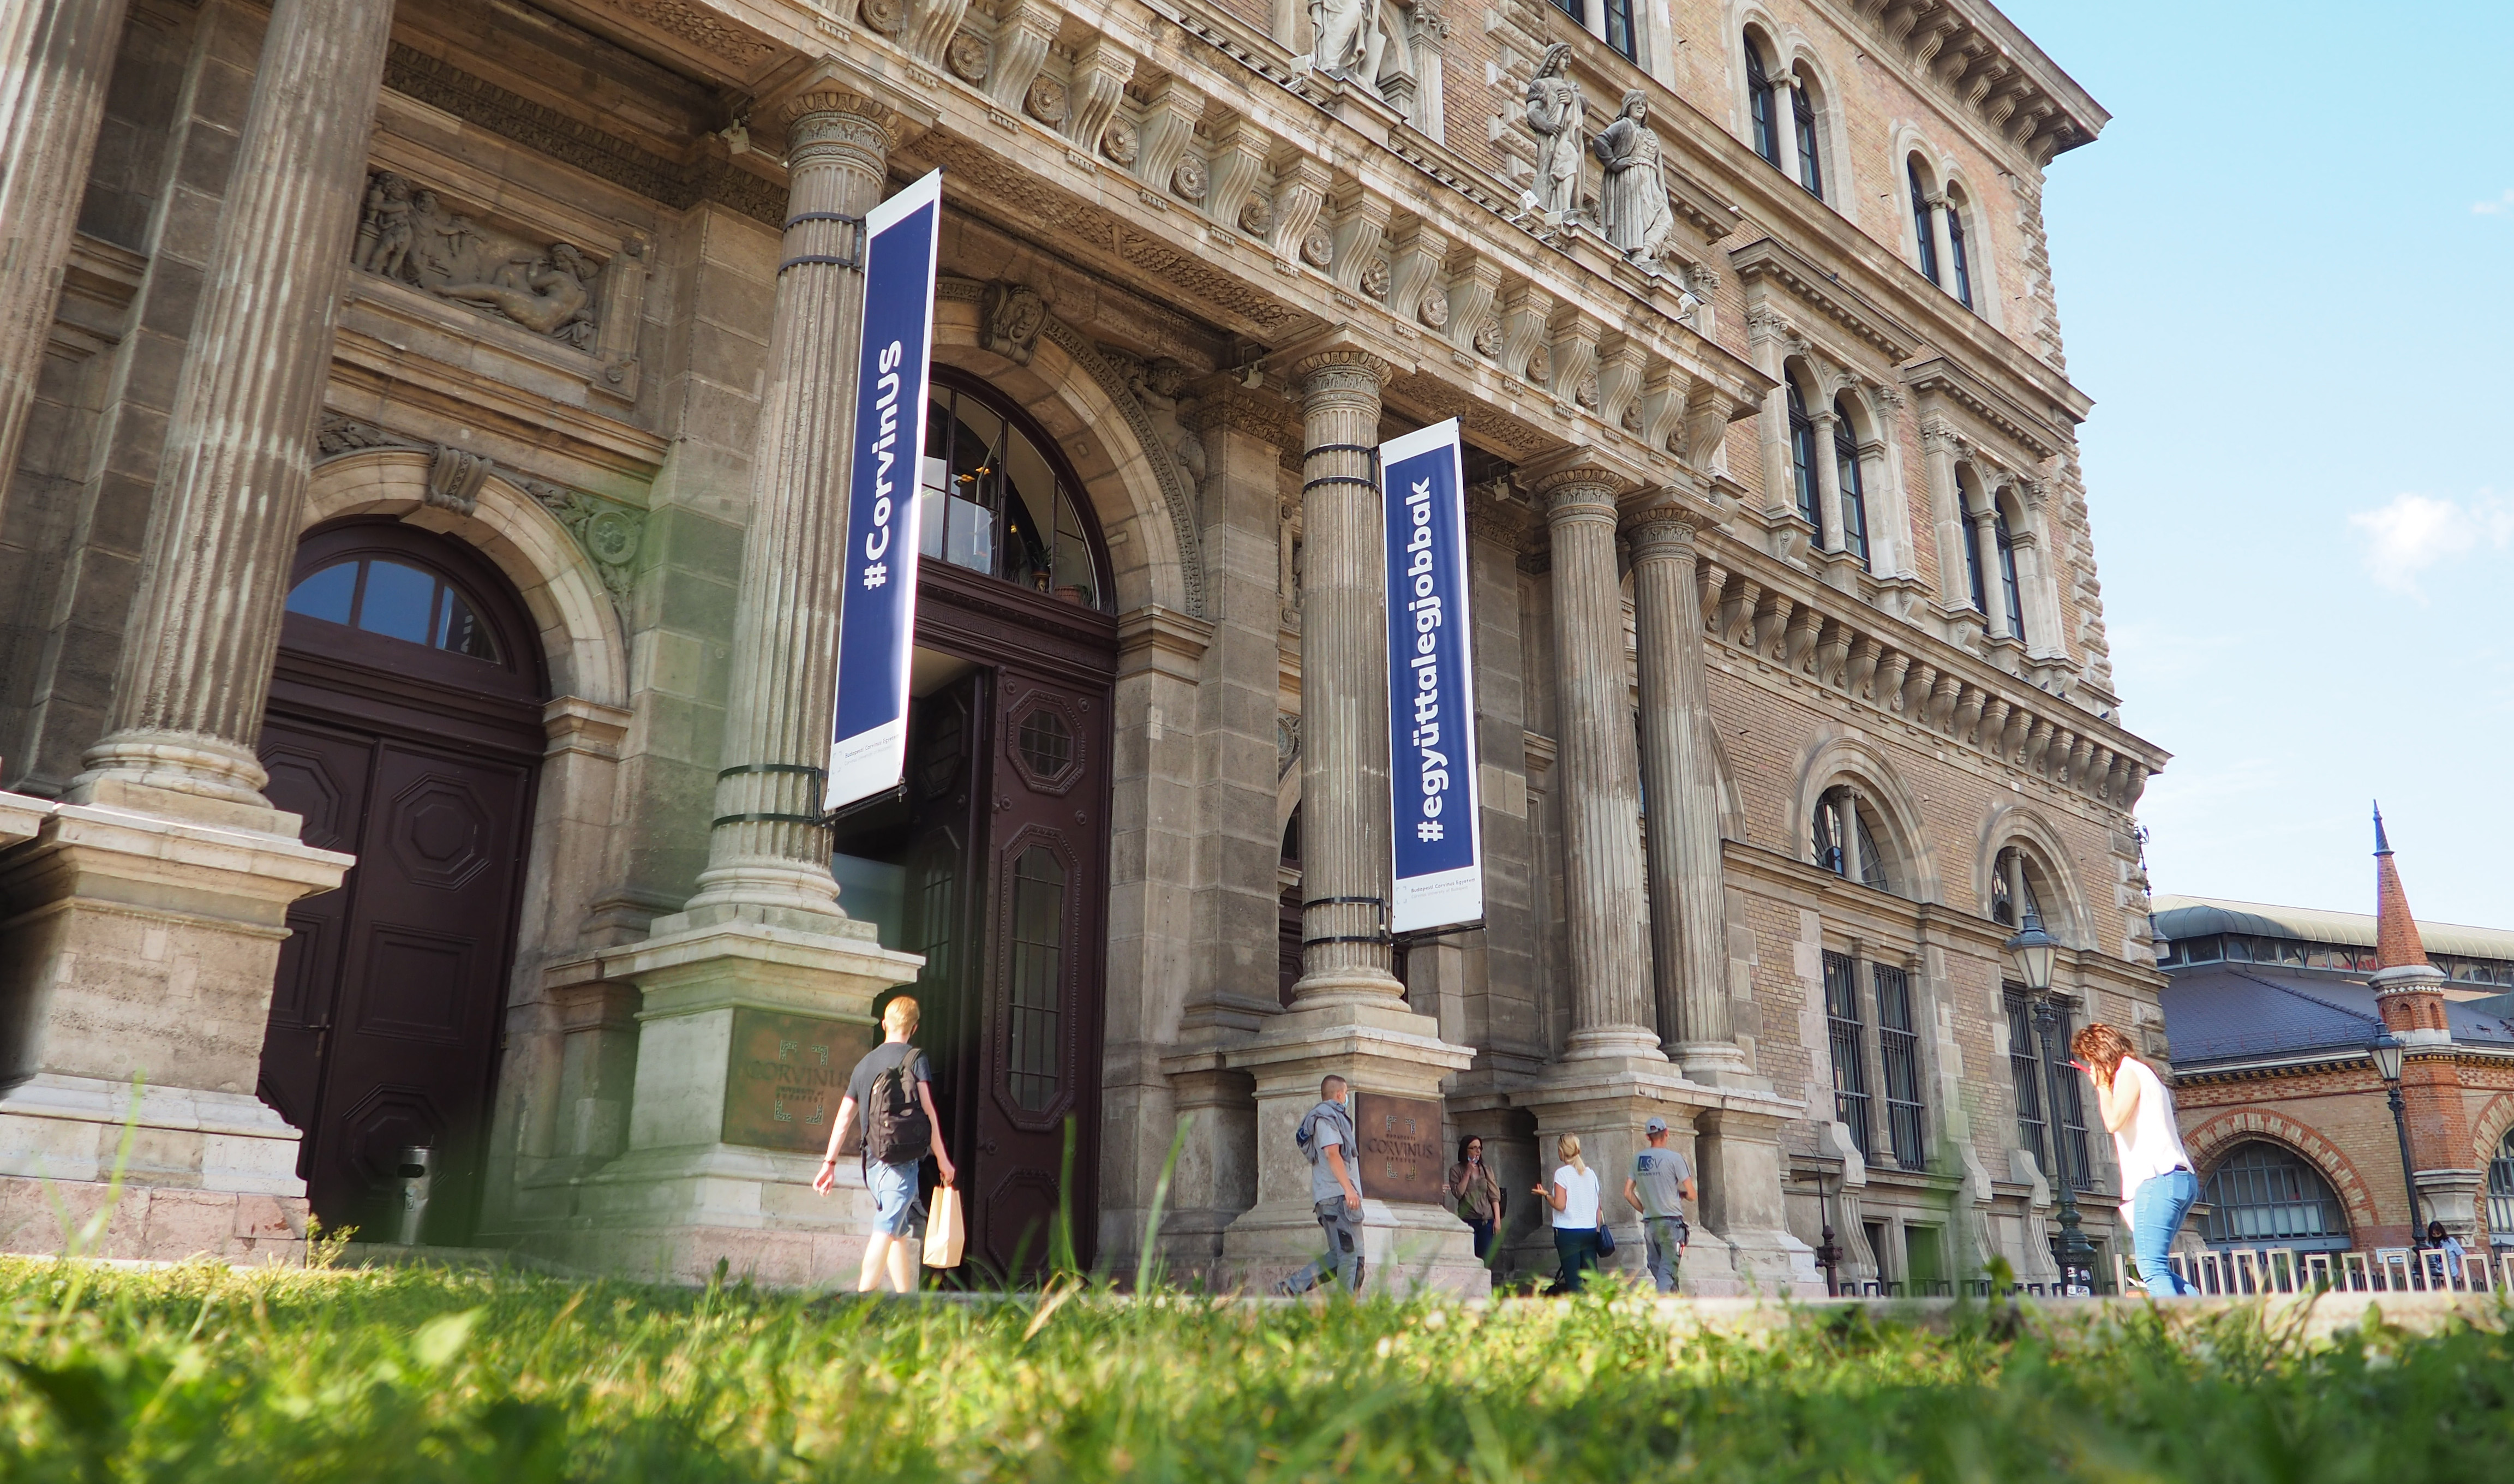 Milyen szerepet vállal a Magyar Nemzeti Bank a felsőoktatásban?